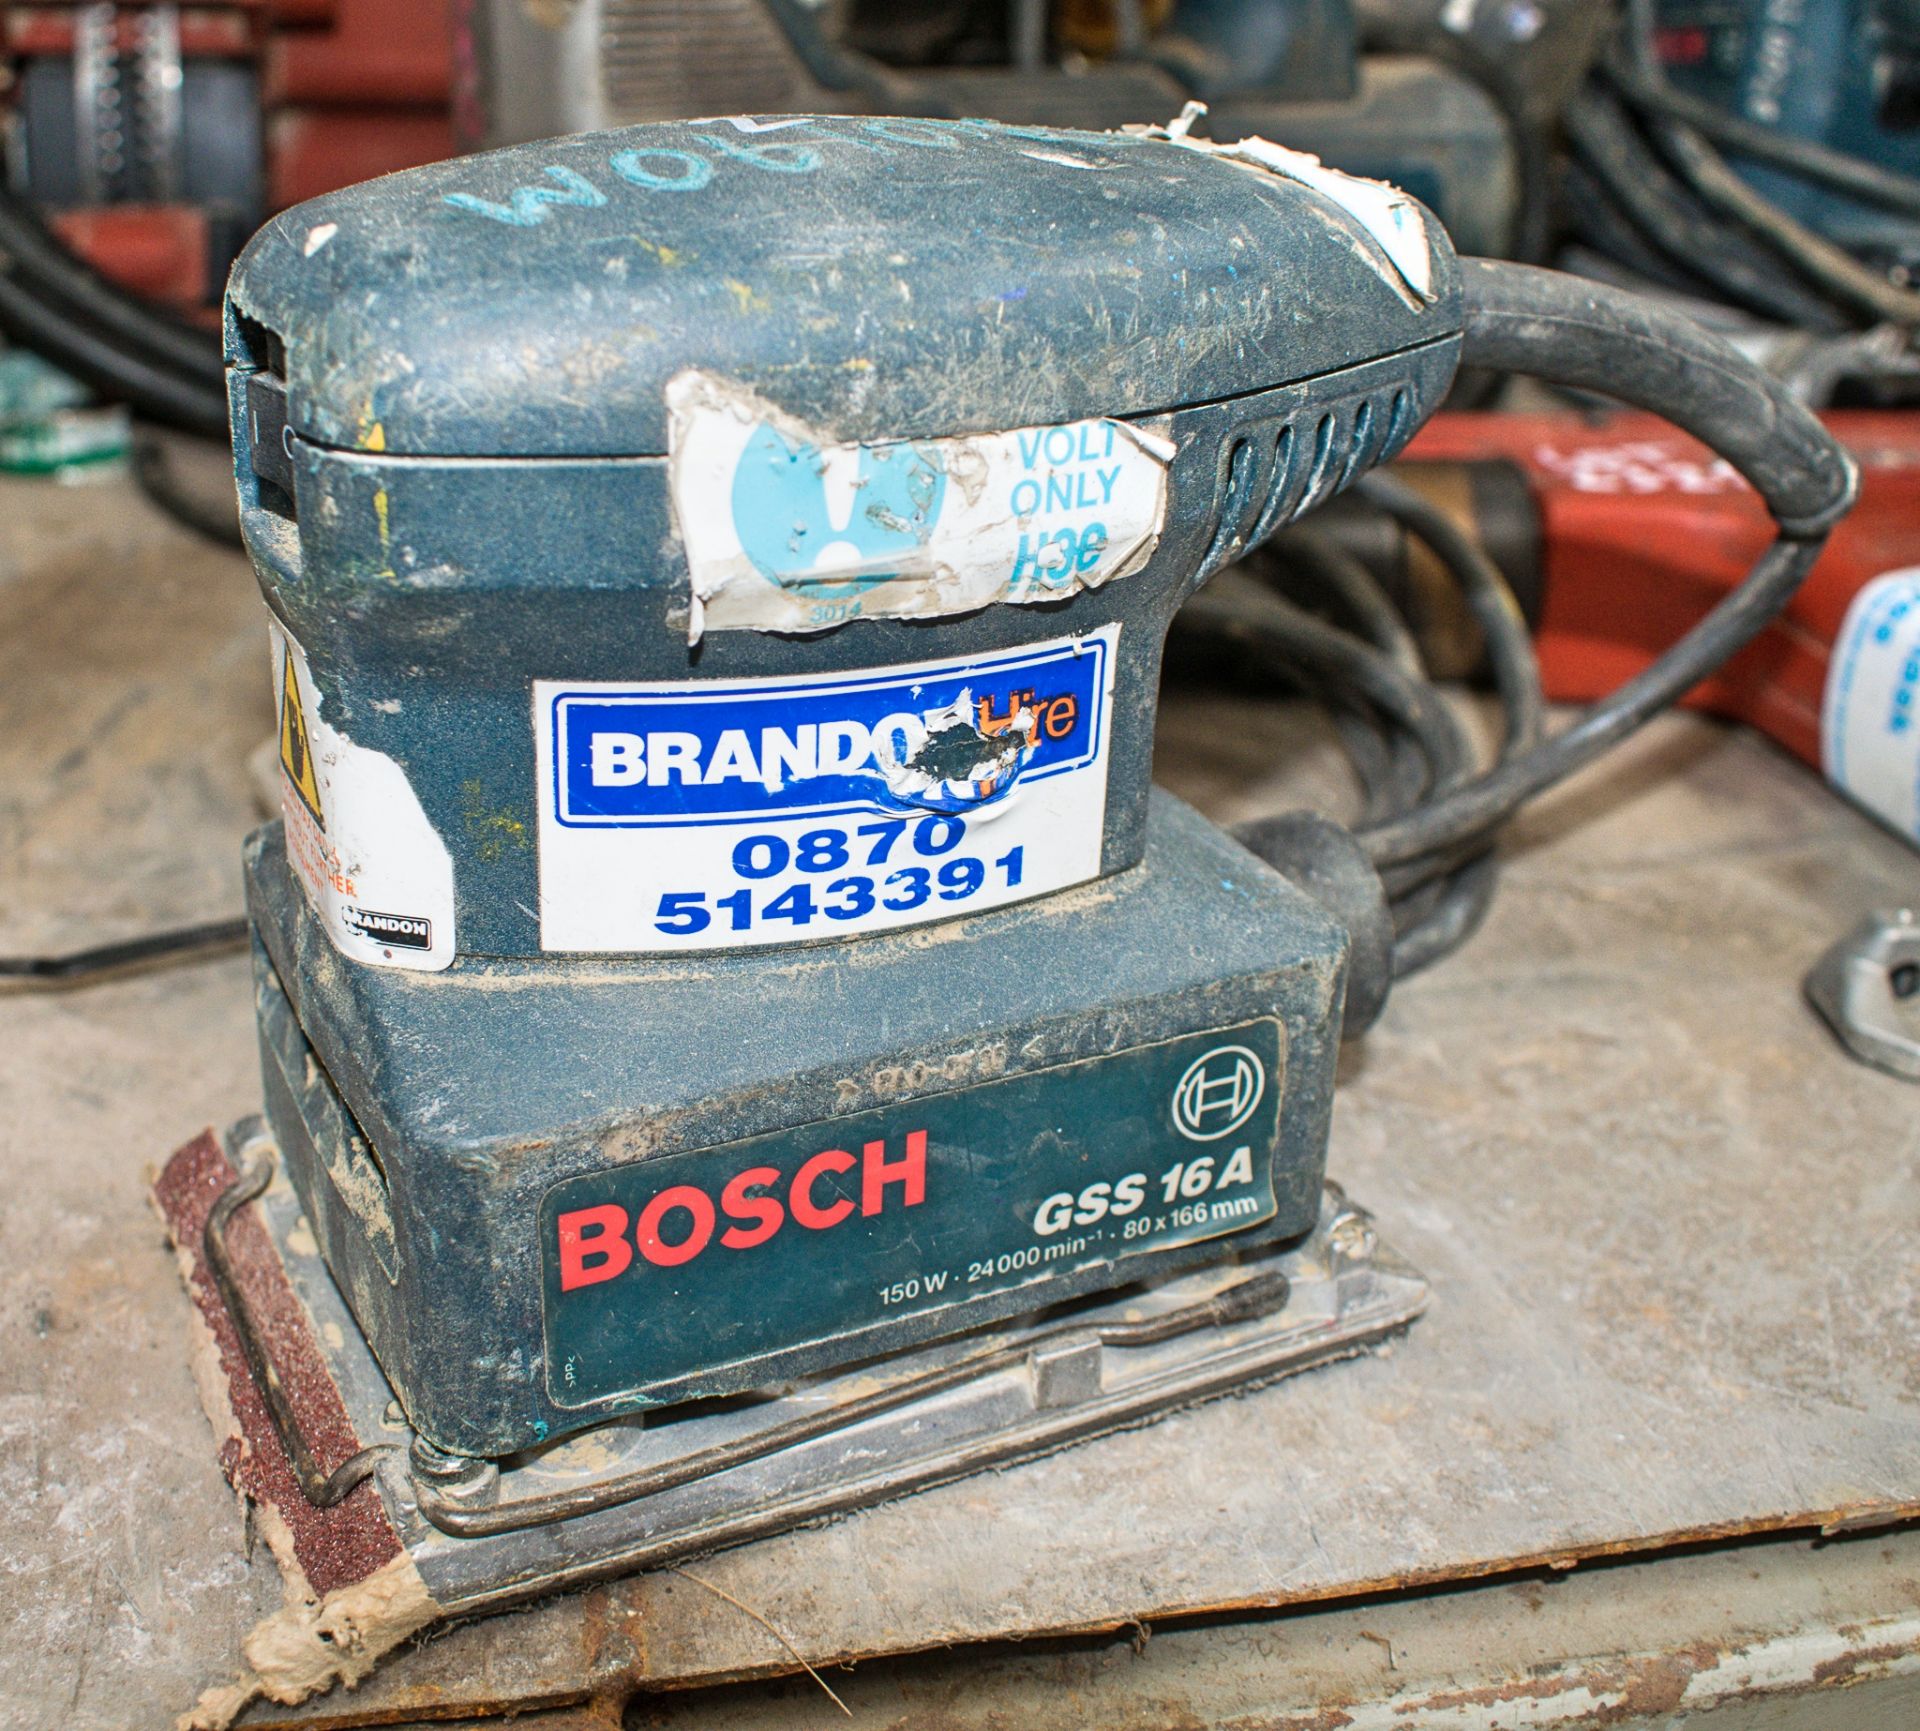 Bosch 110v palm sander